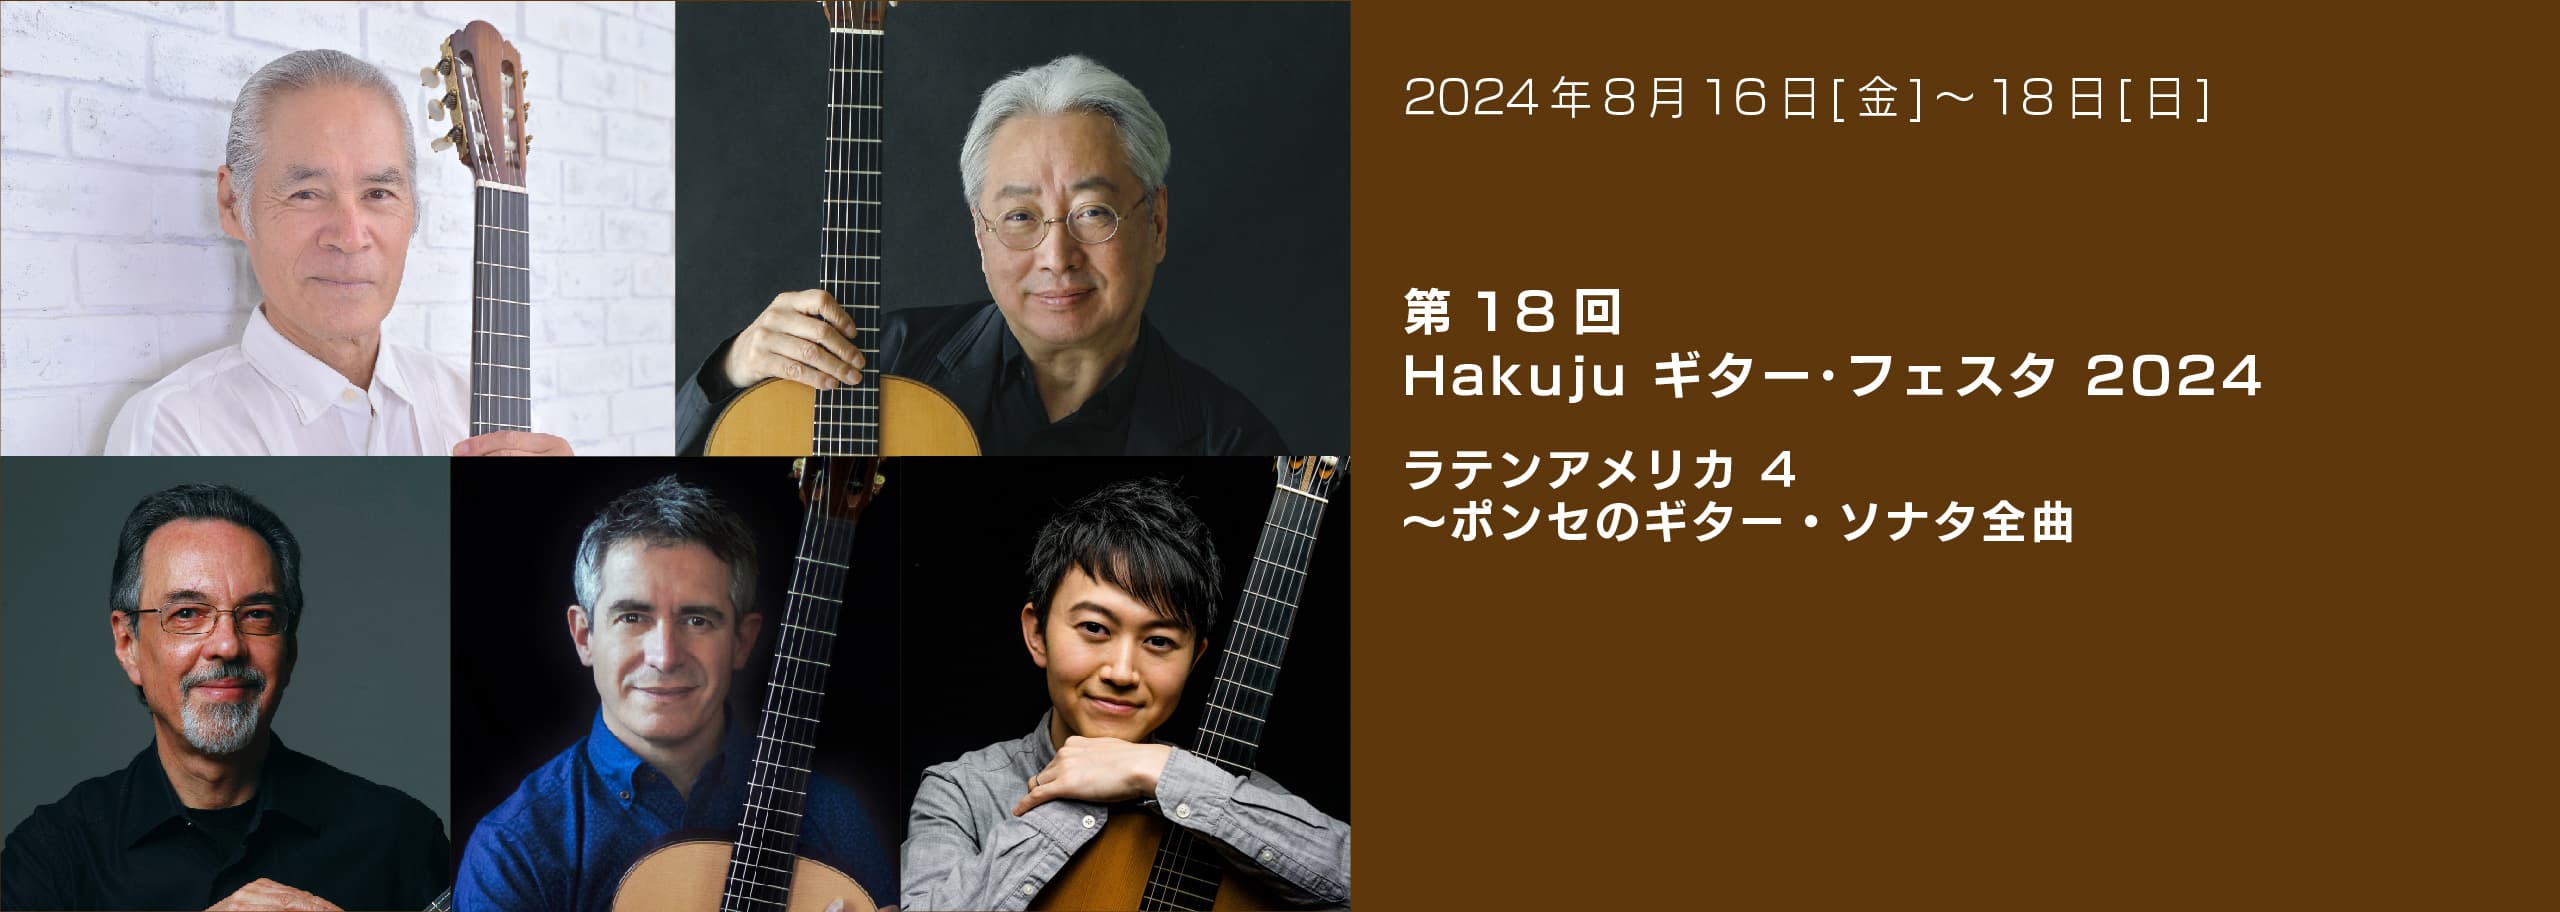 第18回 Hakuju ギター・フェスタ 2024